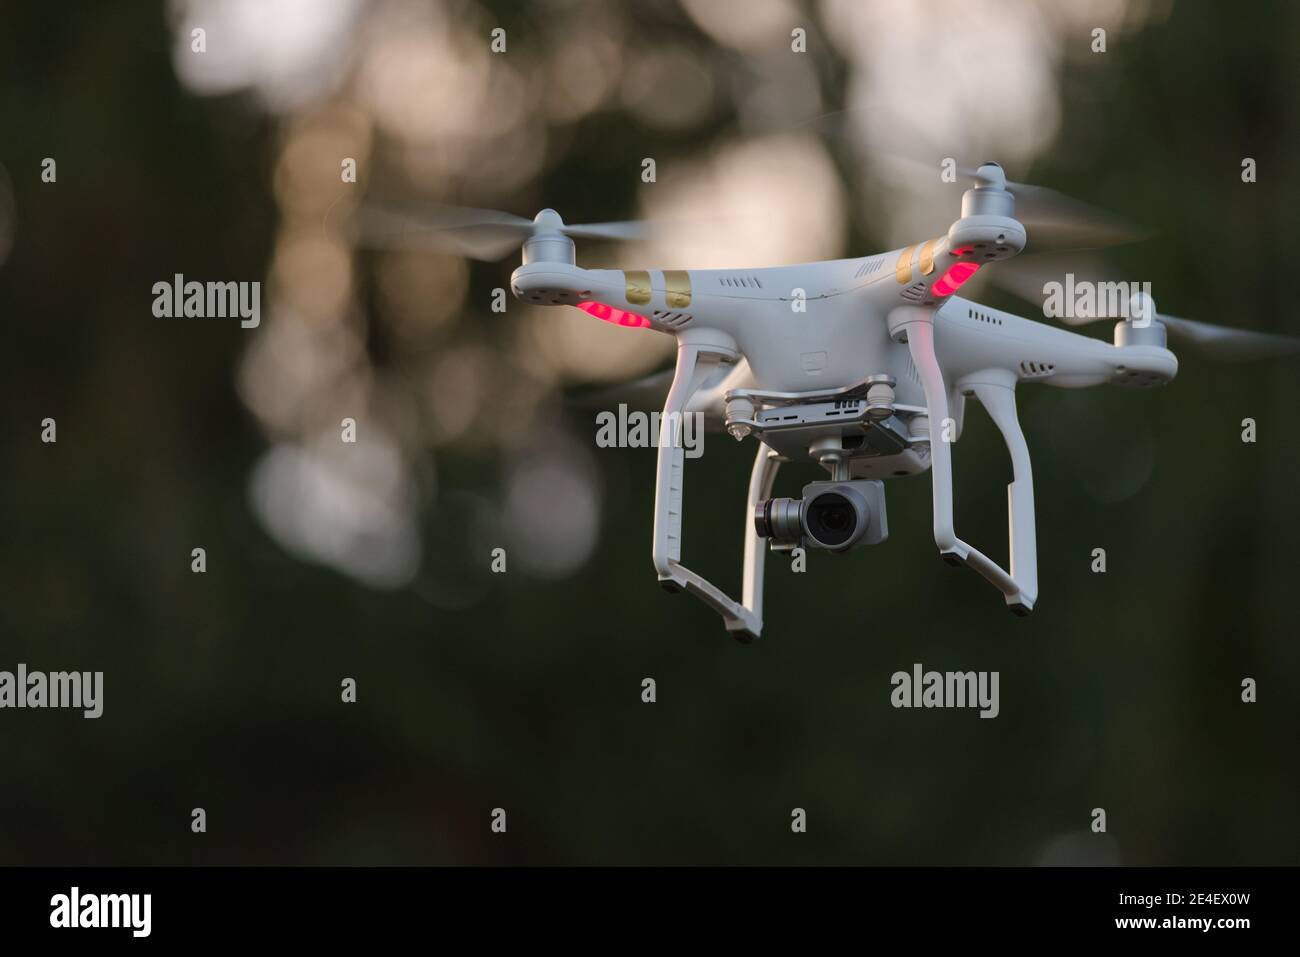 10 - Drohne Quadcopter mit hochauflösender Digitalkamera. Professionelle UAV mit WiFi-Kameralink und Funksteuerungs-Schnittstelle. Stockfoto